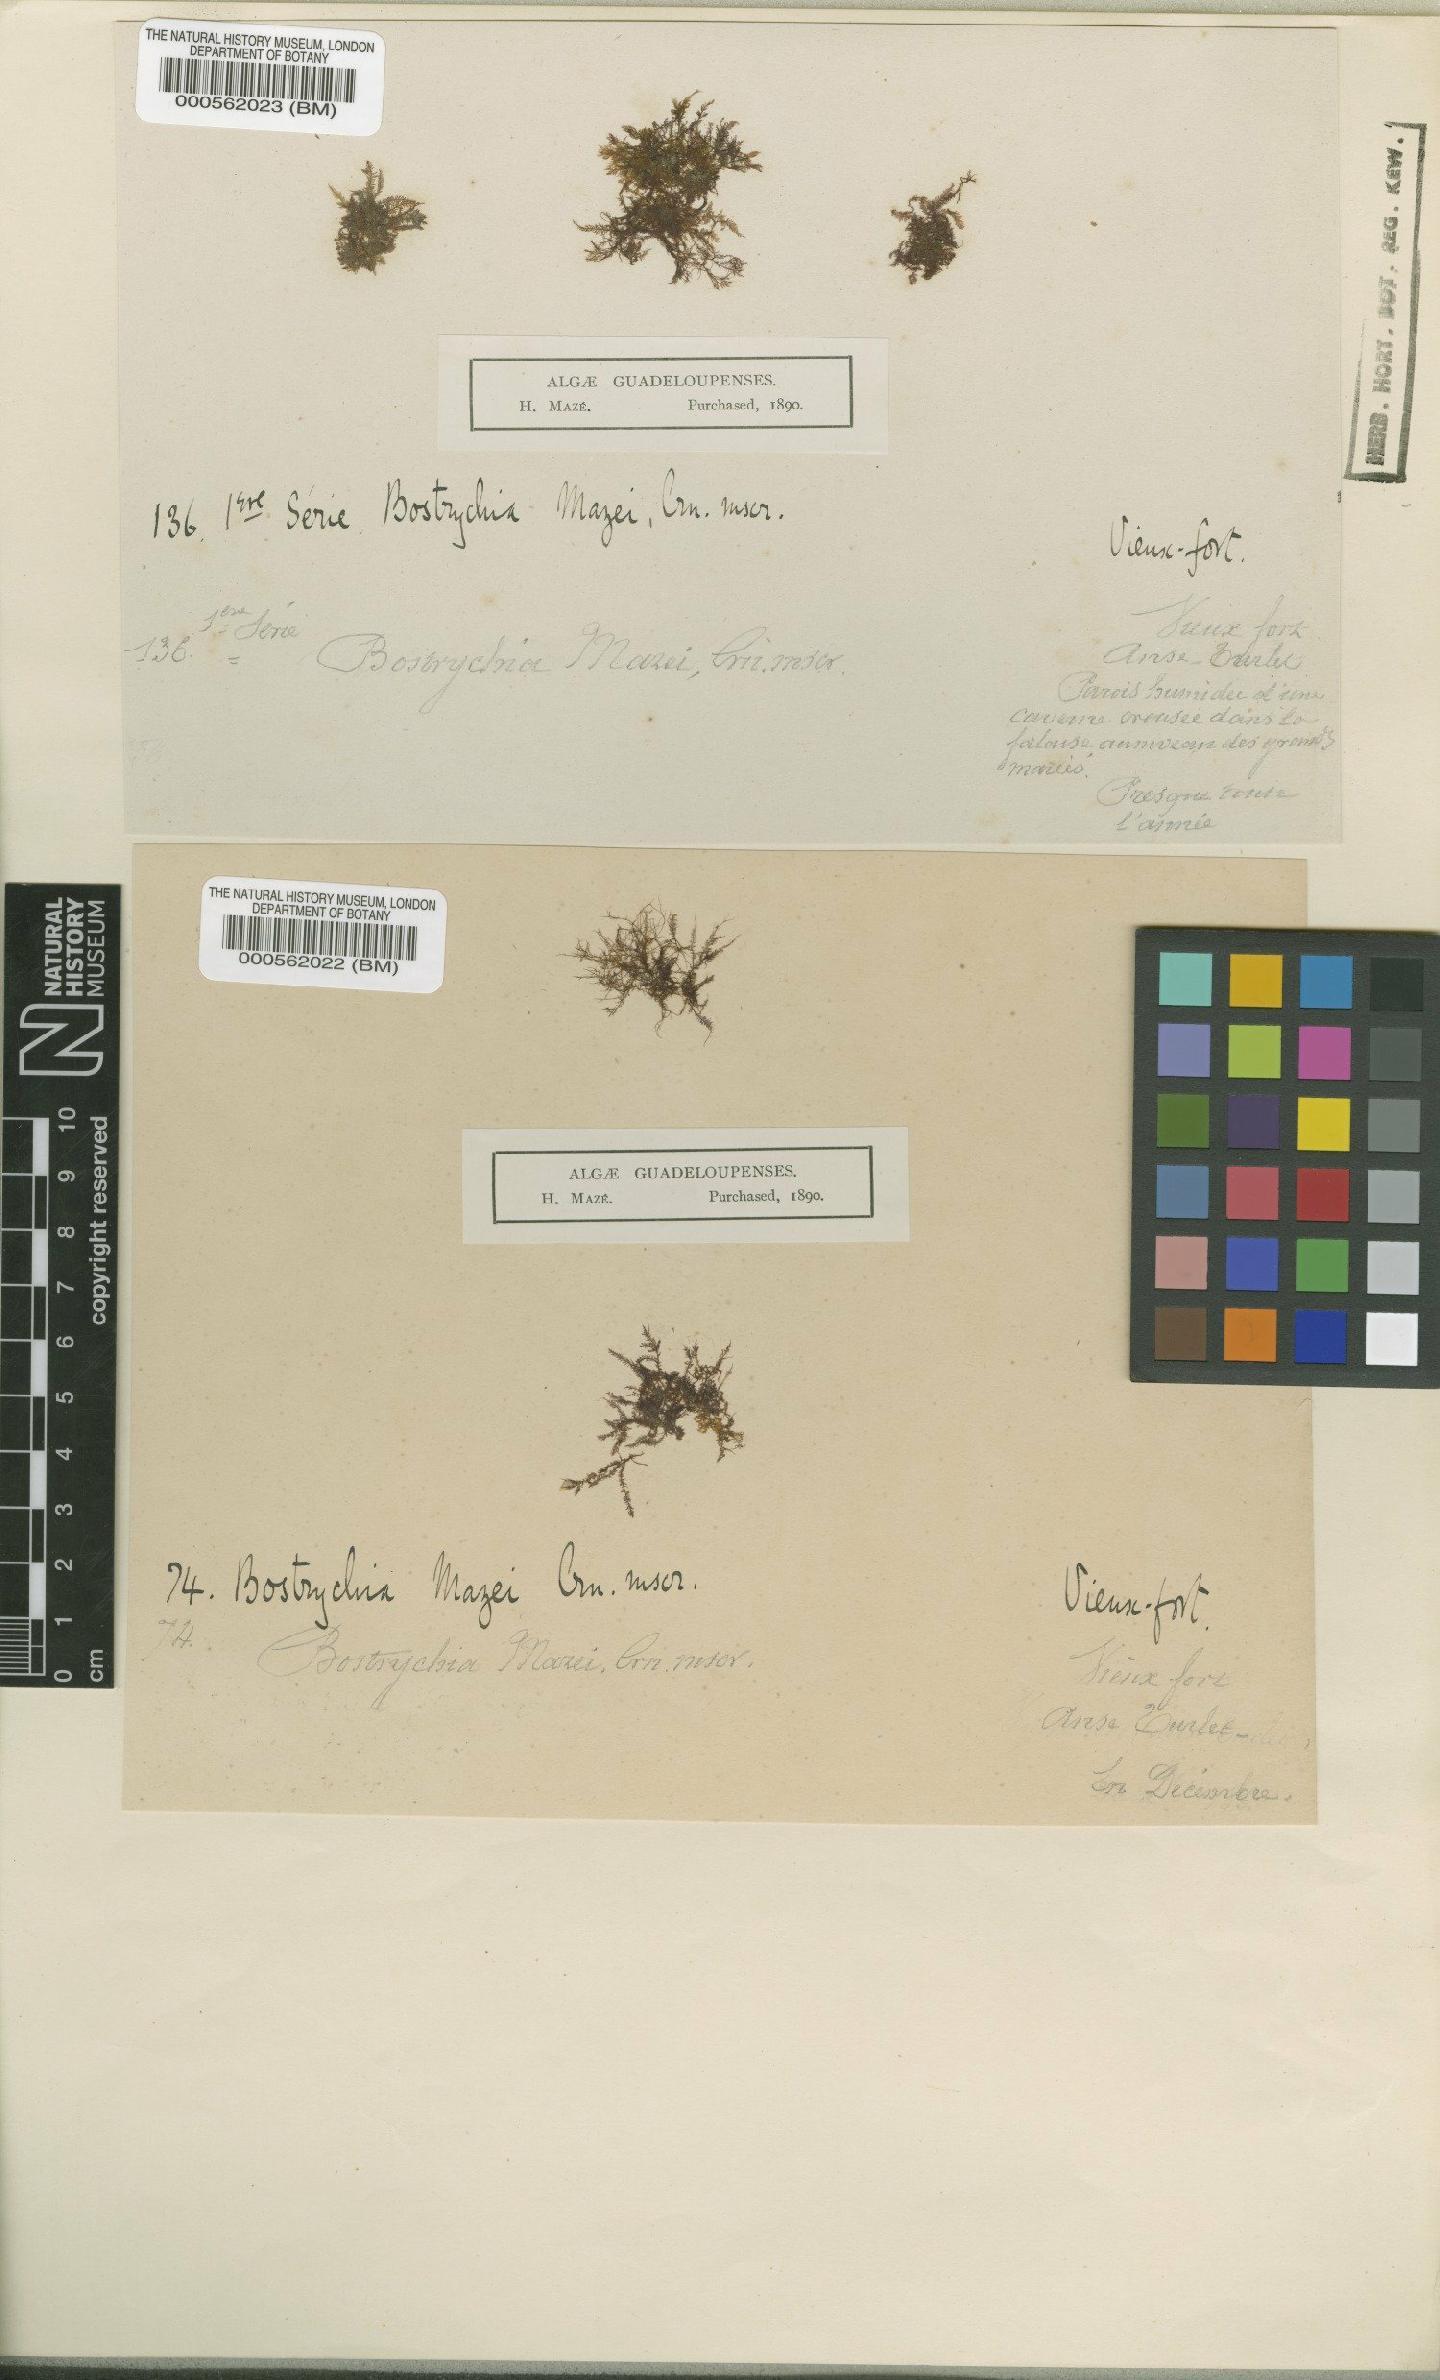 To NHMUK collection (Bostrychia mazei Crouan; Syntype; NHMUK:ecatalogue:4834259)